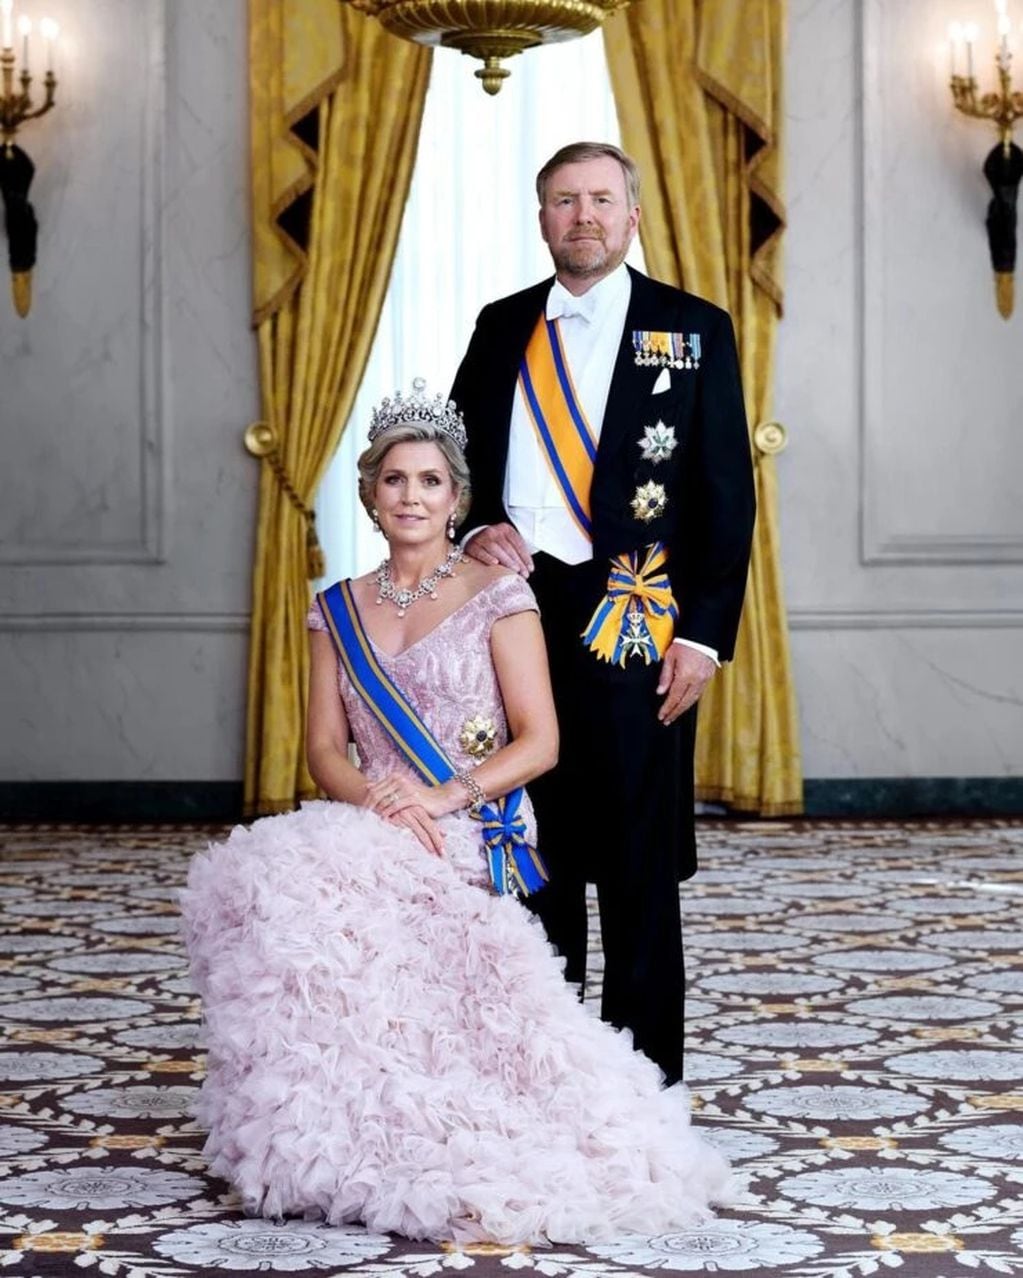 Máxima Zorreguieta junto a su esposo, el rey de Países Bajos.